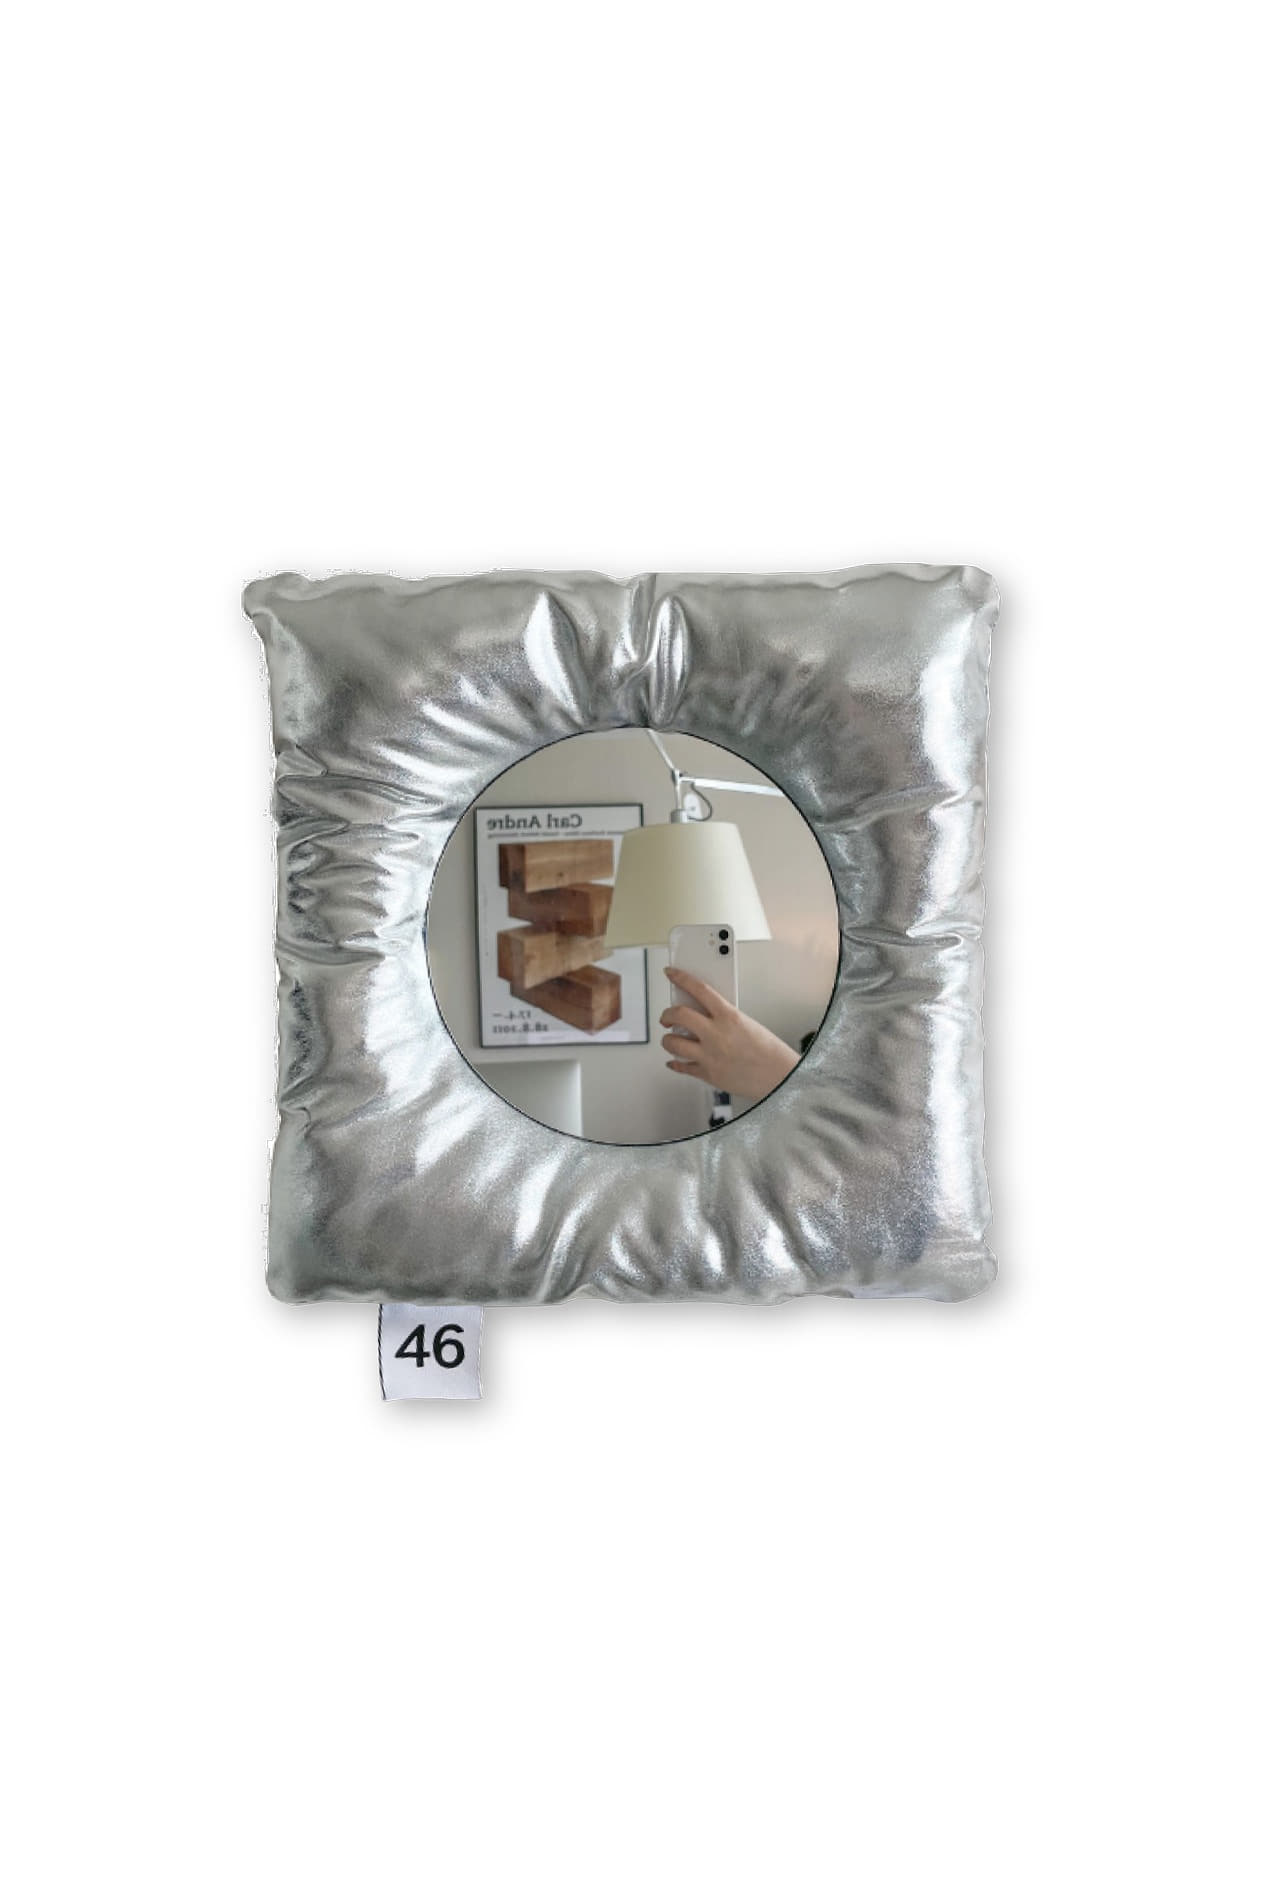 cushion mirror(metal)